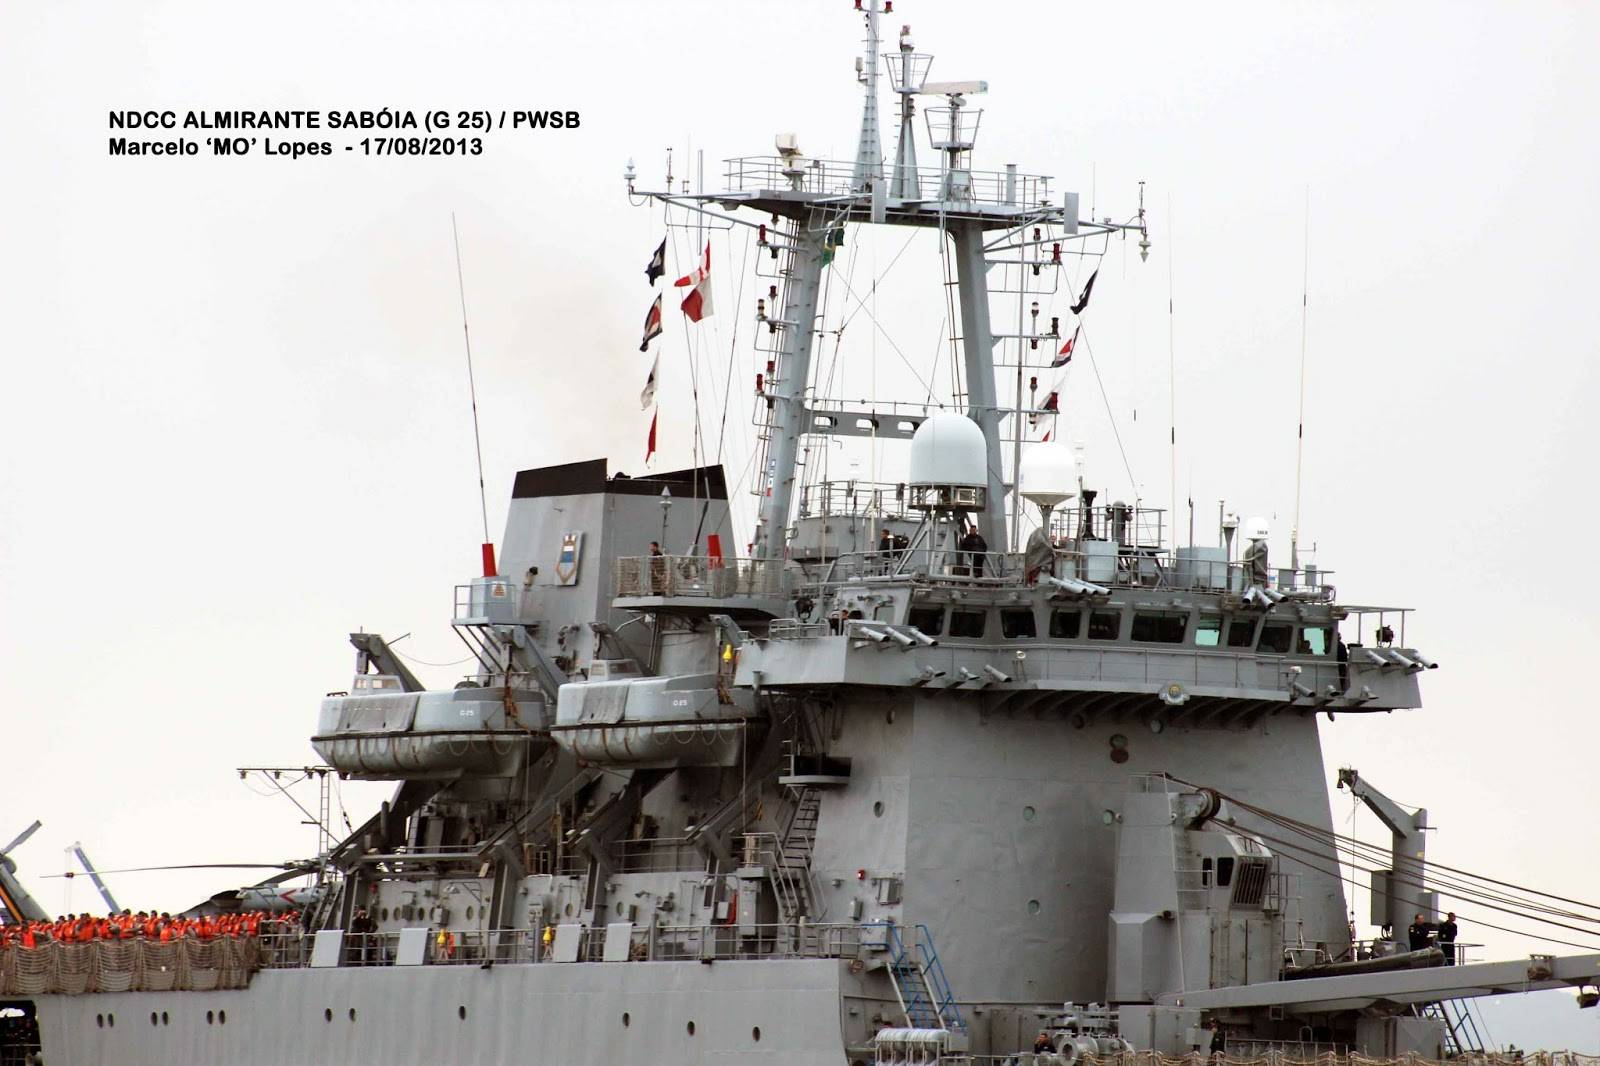 Detalhe da superestrutura do Almirante Sabóia deixando o porto de Santos em 17 de agosto de 2013. (foto: Marcelo M. Lopes da Silva)